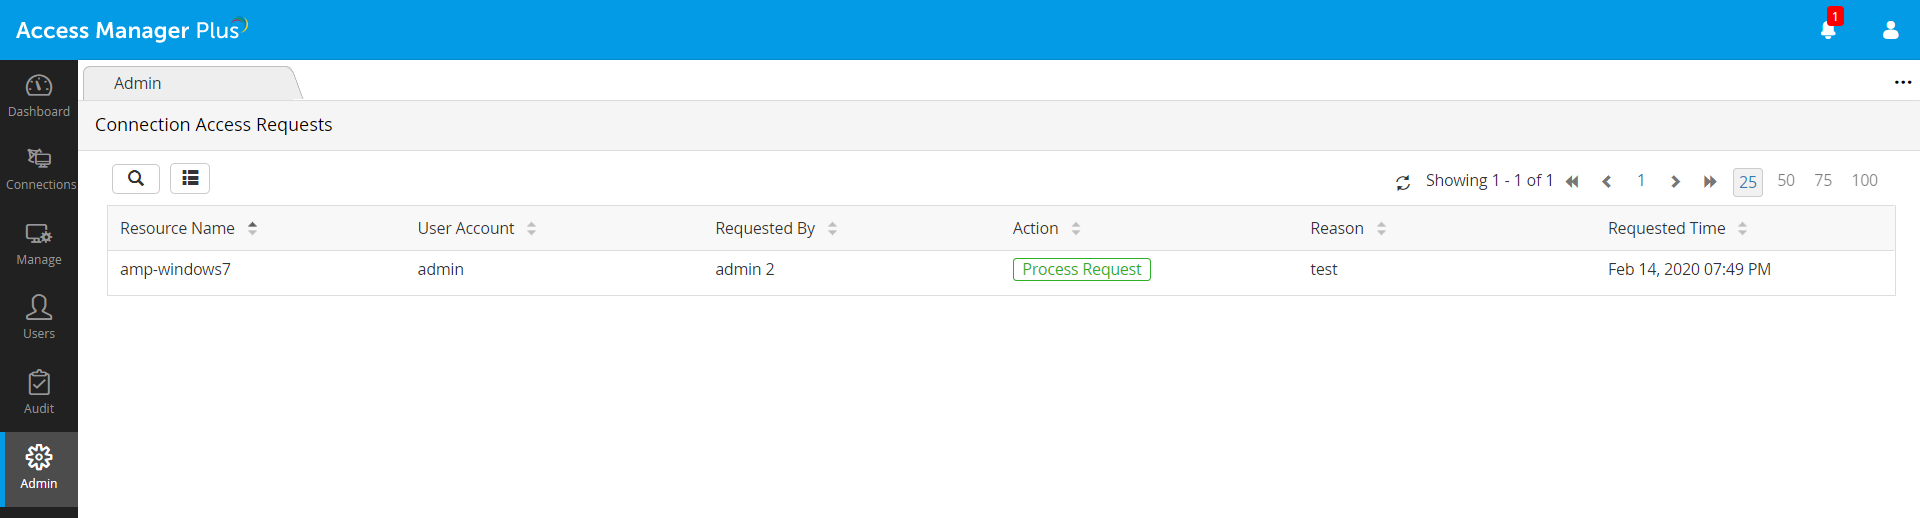 Dashboard de opciones de administación para aprobar o rechazar solicitudes de acceso con Access Manager Plus